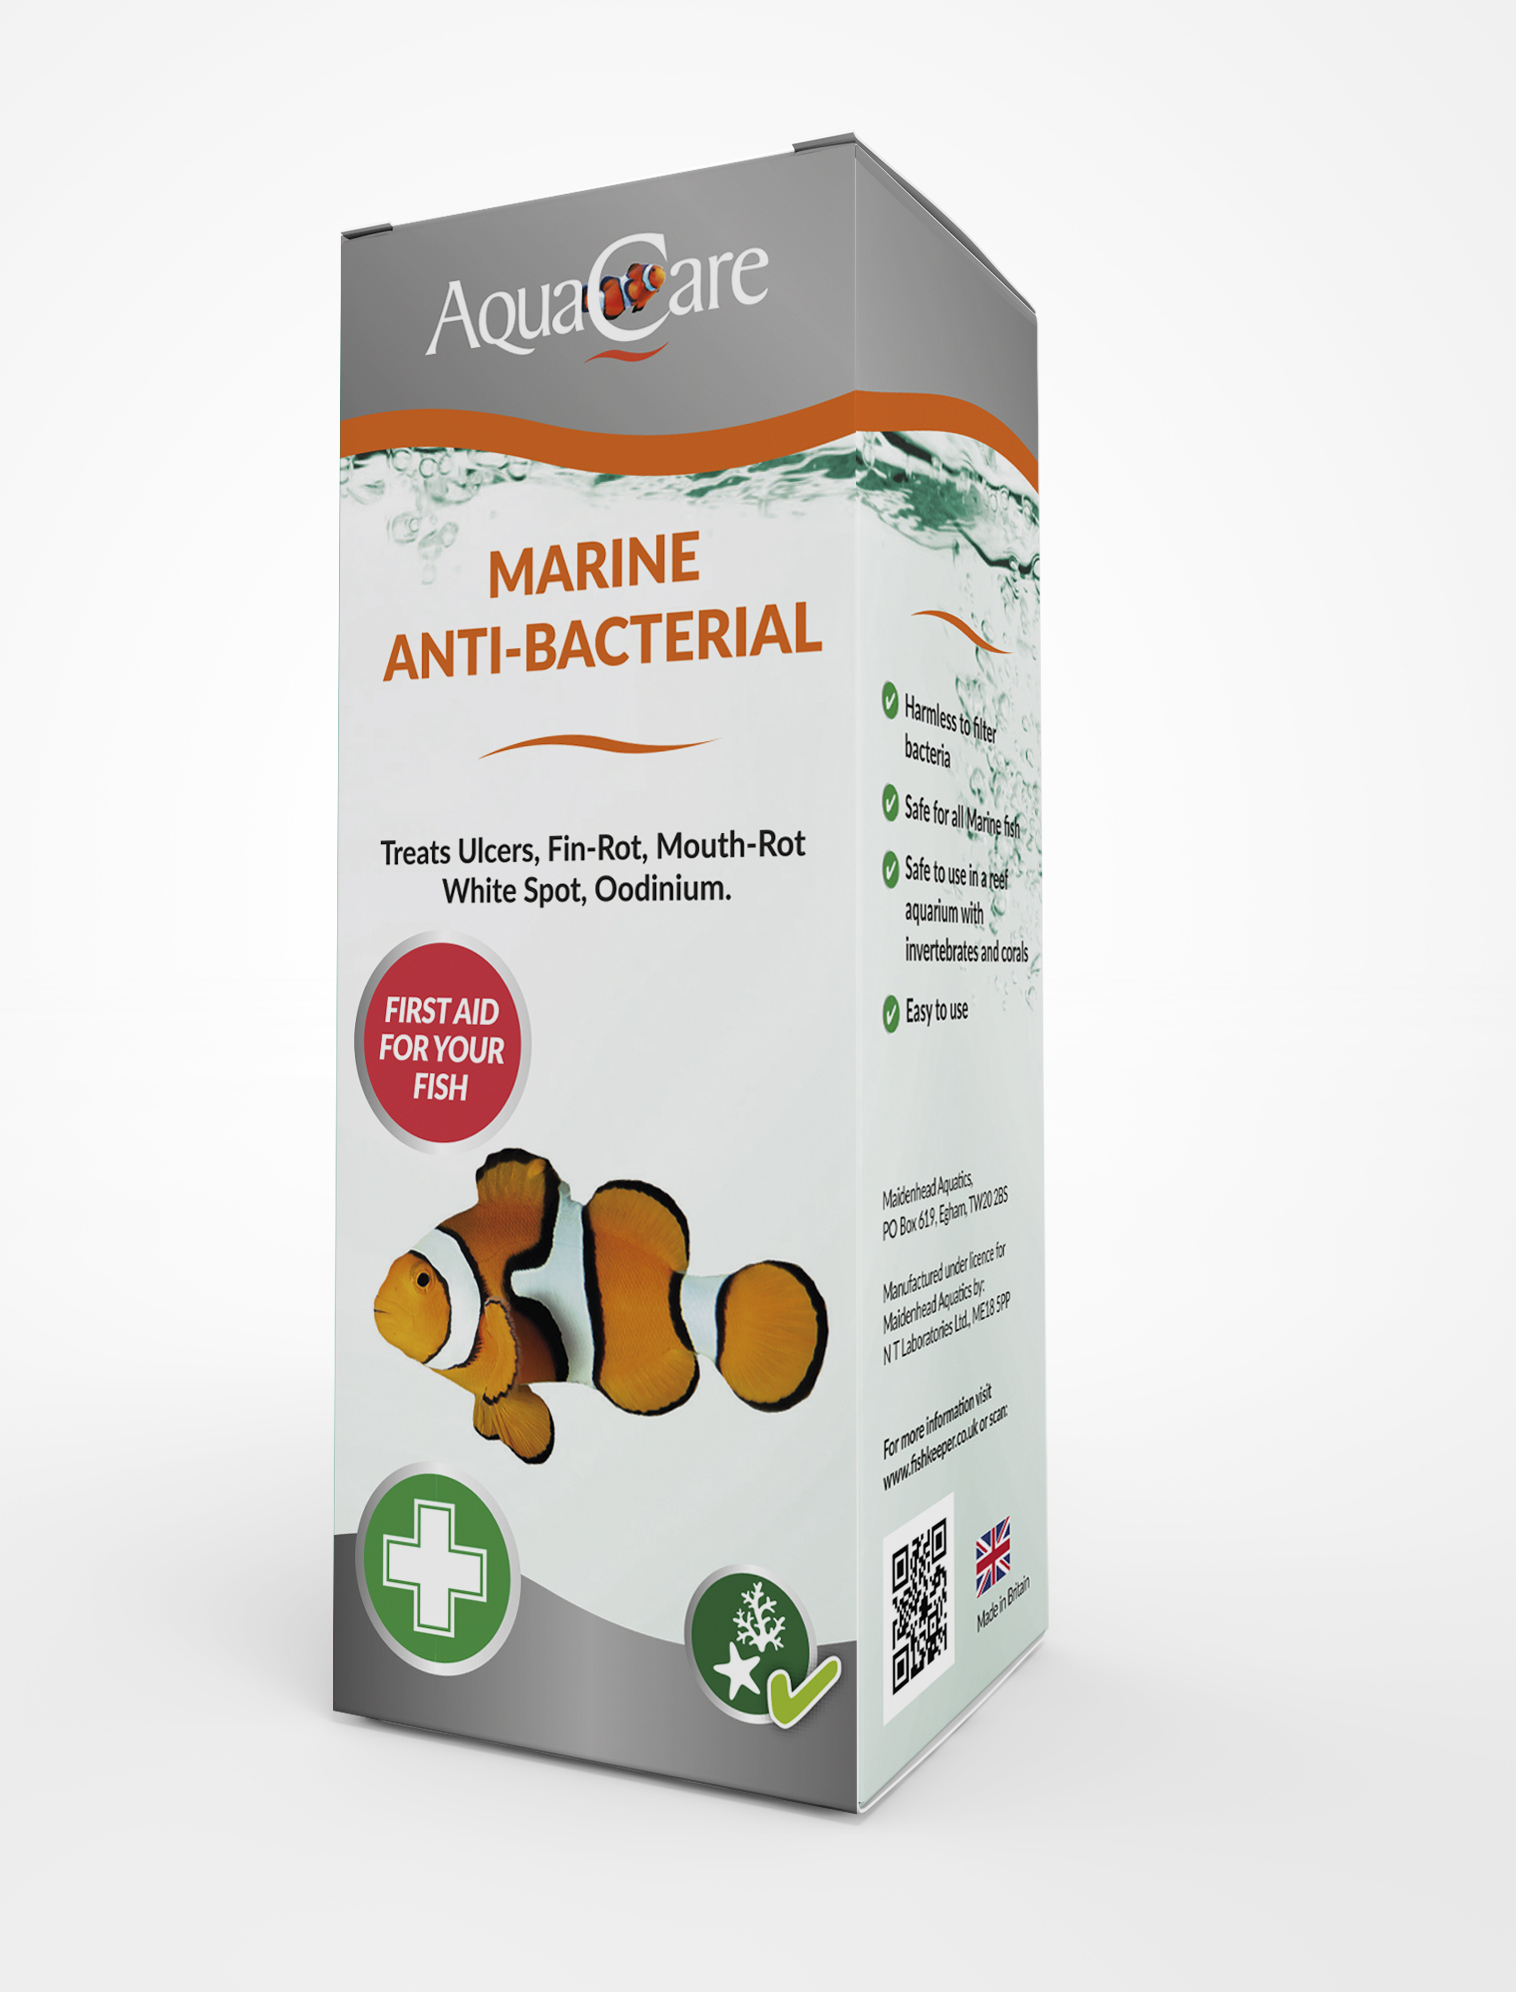 aquacare-marine-anti-bacterial-1479811195.jpg